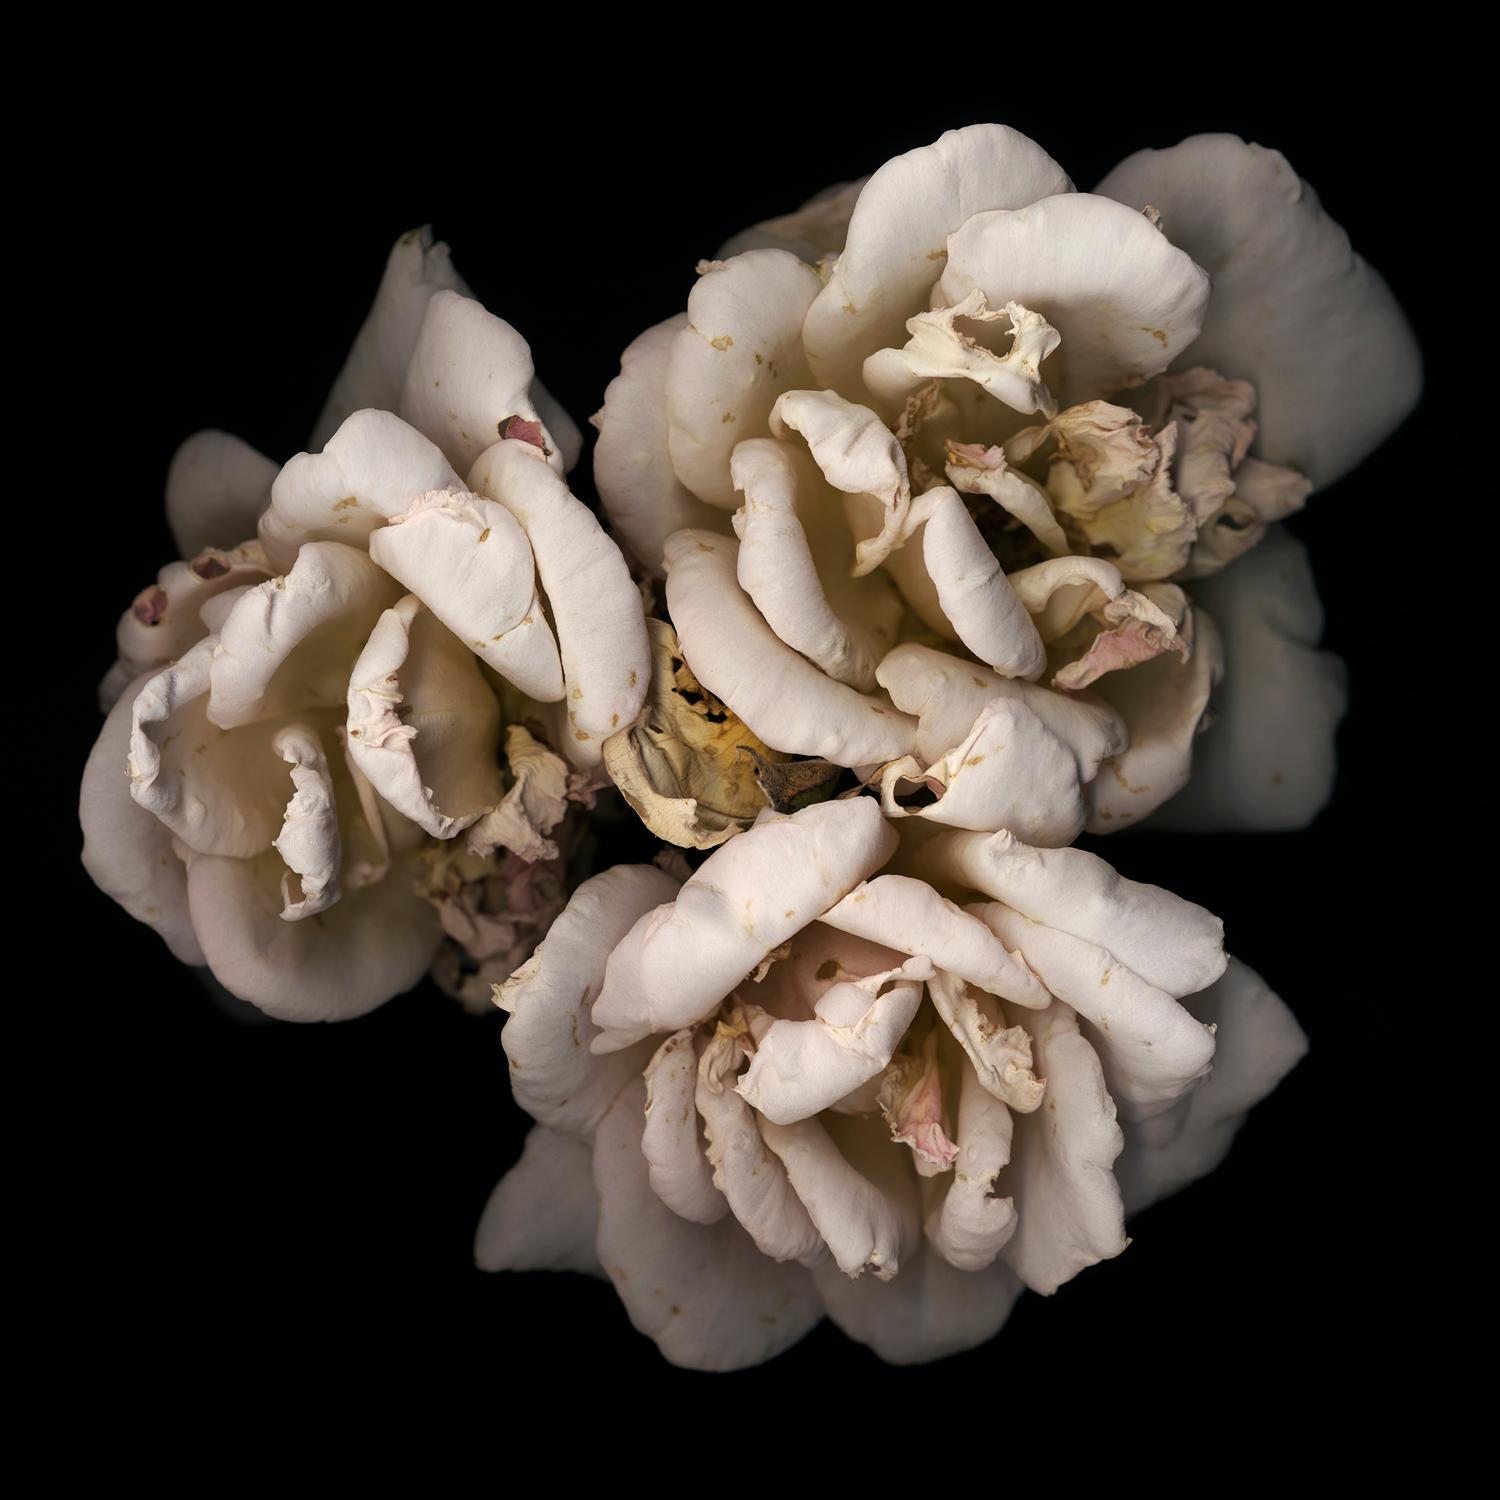 Chad Kleitsch – Blume ohne Titel # 01, Fotografie 2002, Nachdruck